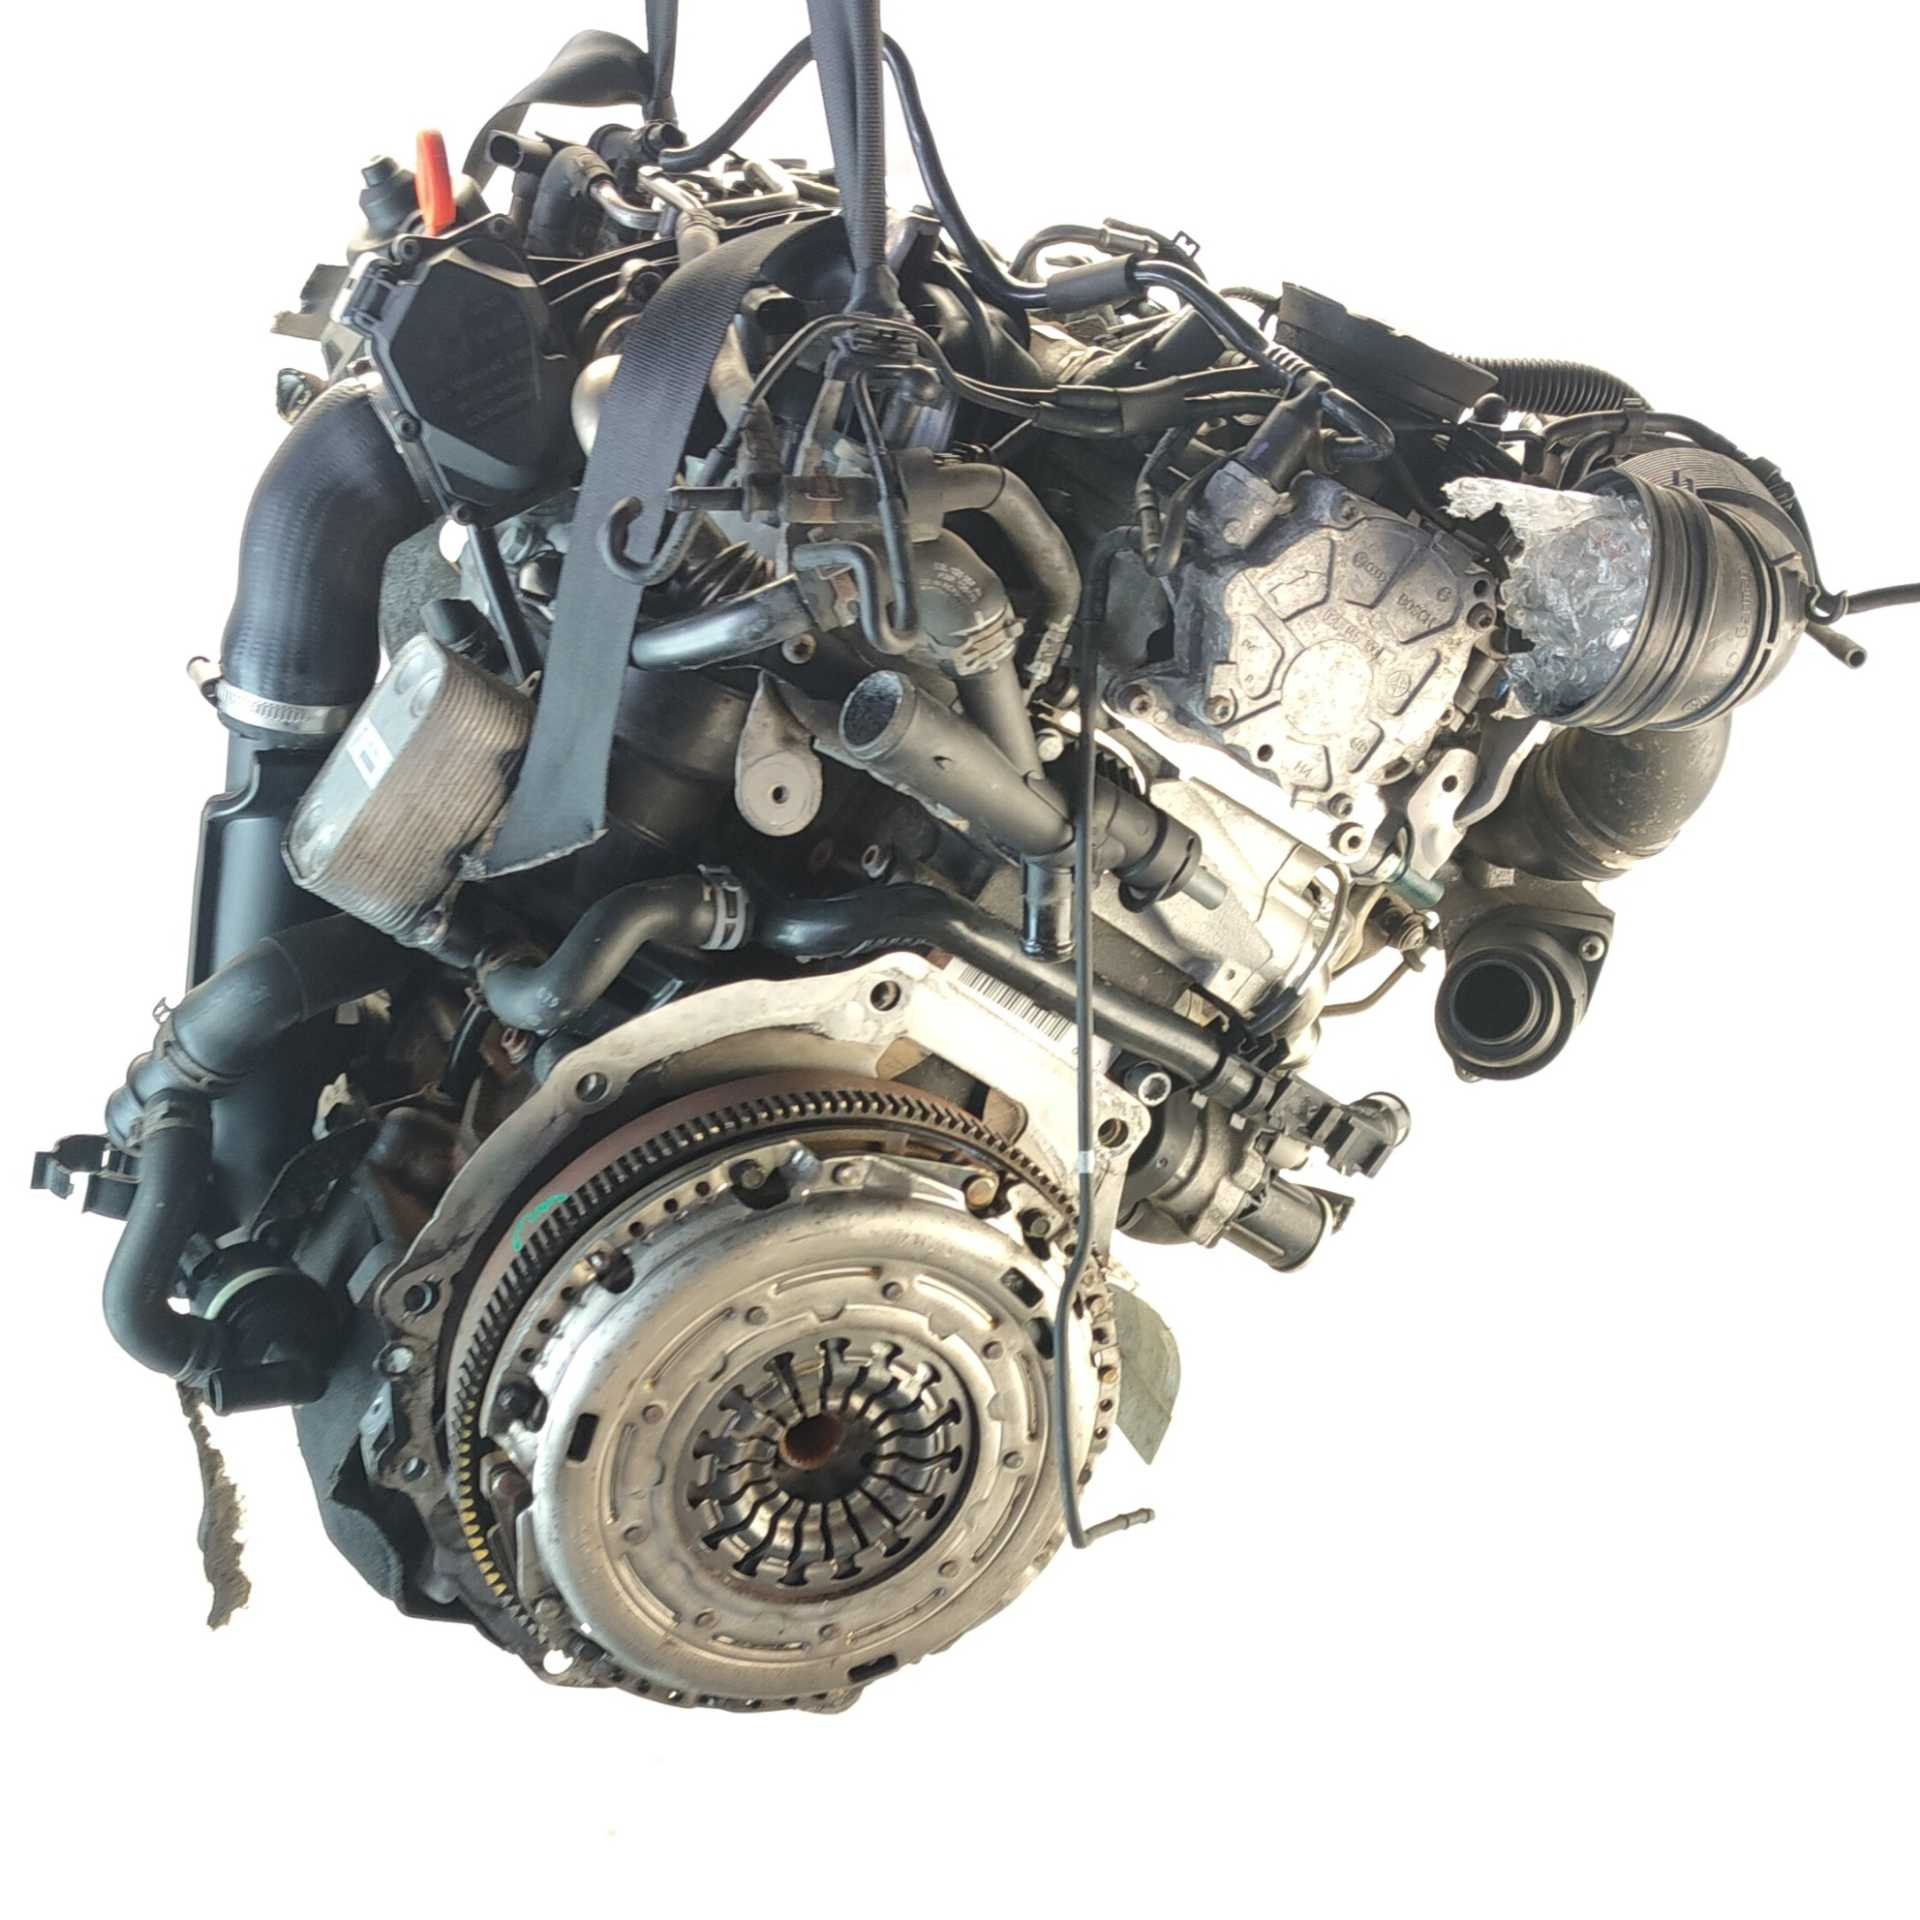 MOTOR VOLKSWAGEN EOS 2.0 TDI 16V (103 KW / 140 CV) (05.2008 – 08.2015)